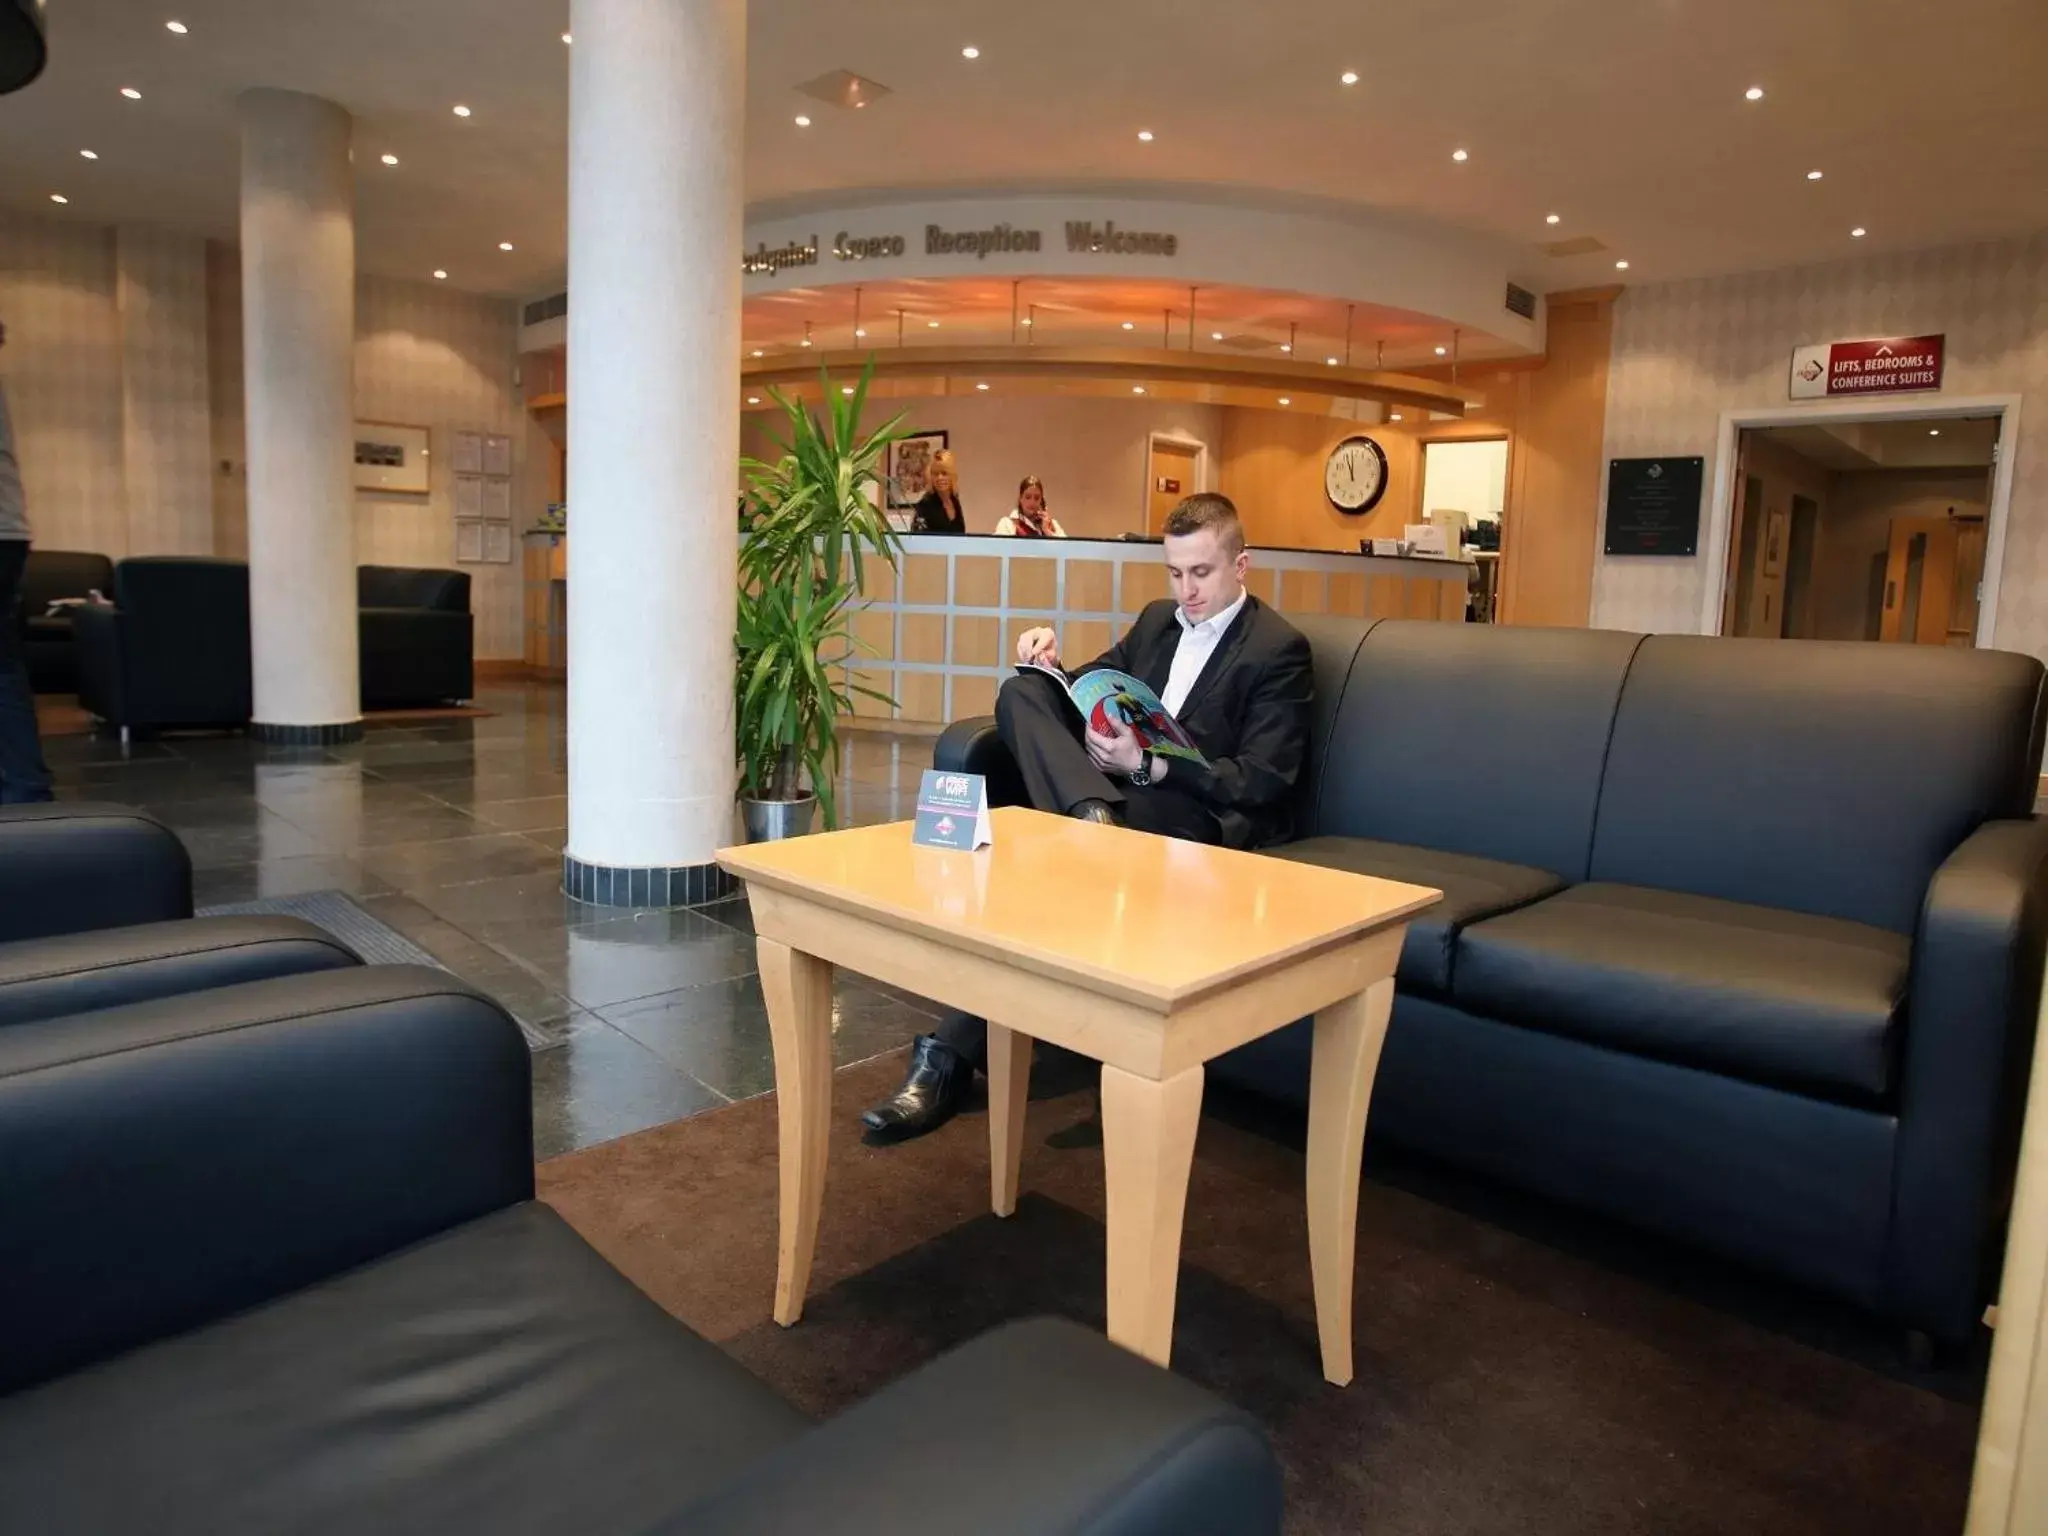 Lobby or reception in Future Inn Cardiff Bay